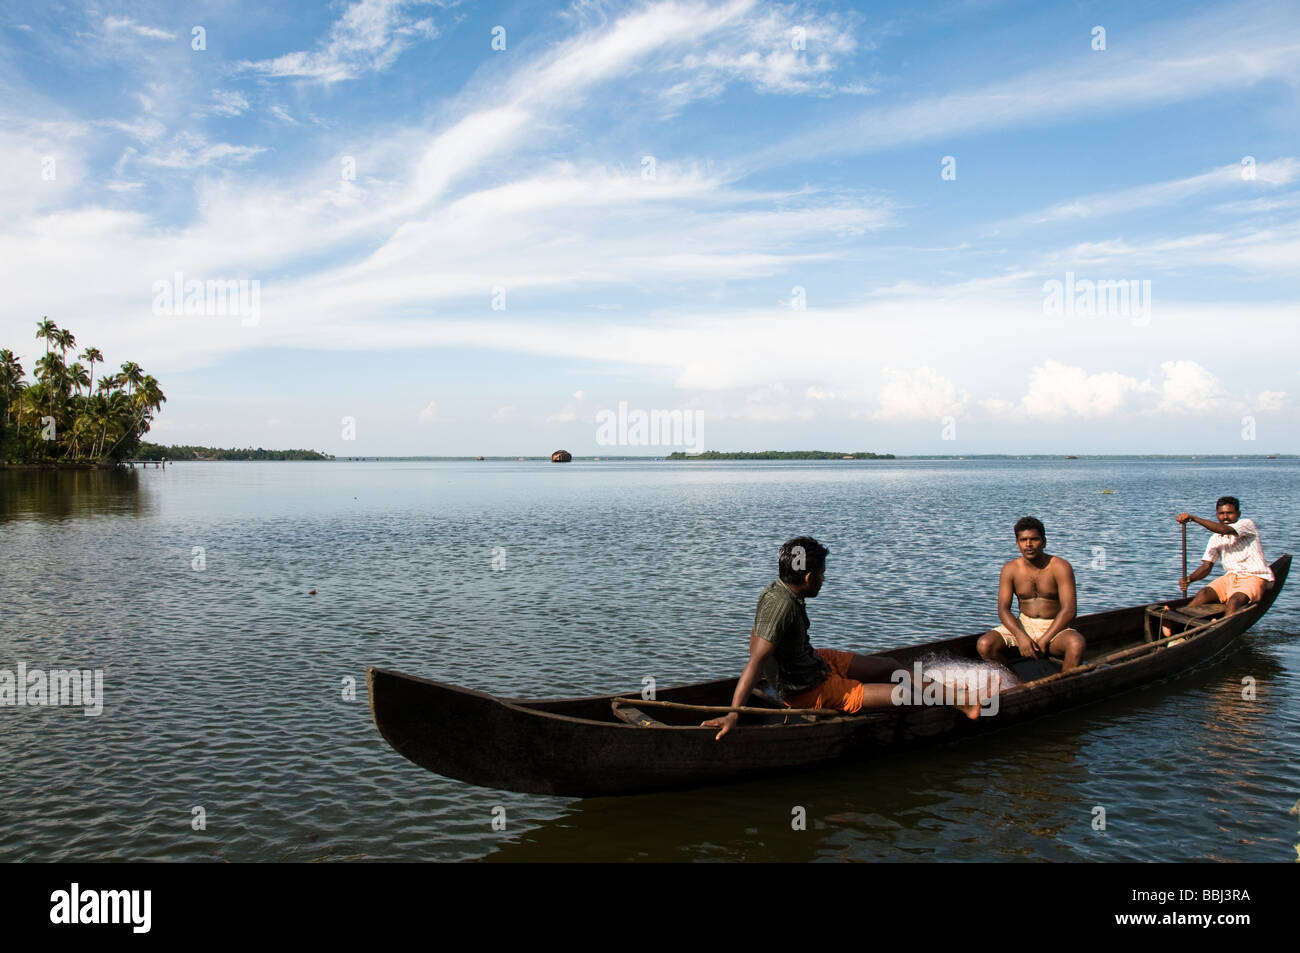 Pescador pesca en bote a remo pesca en el lago, remansos de Kerala, India Foto de stock